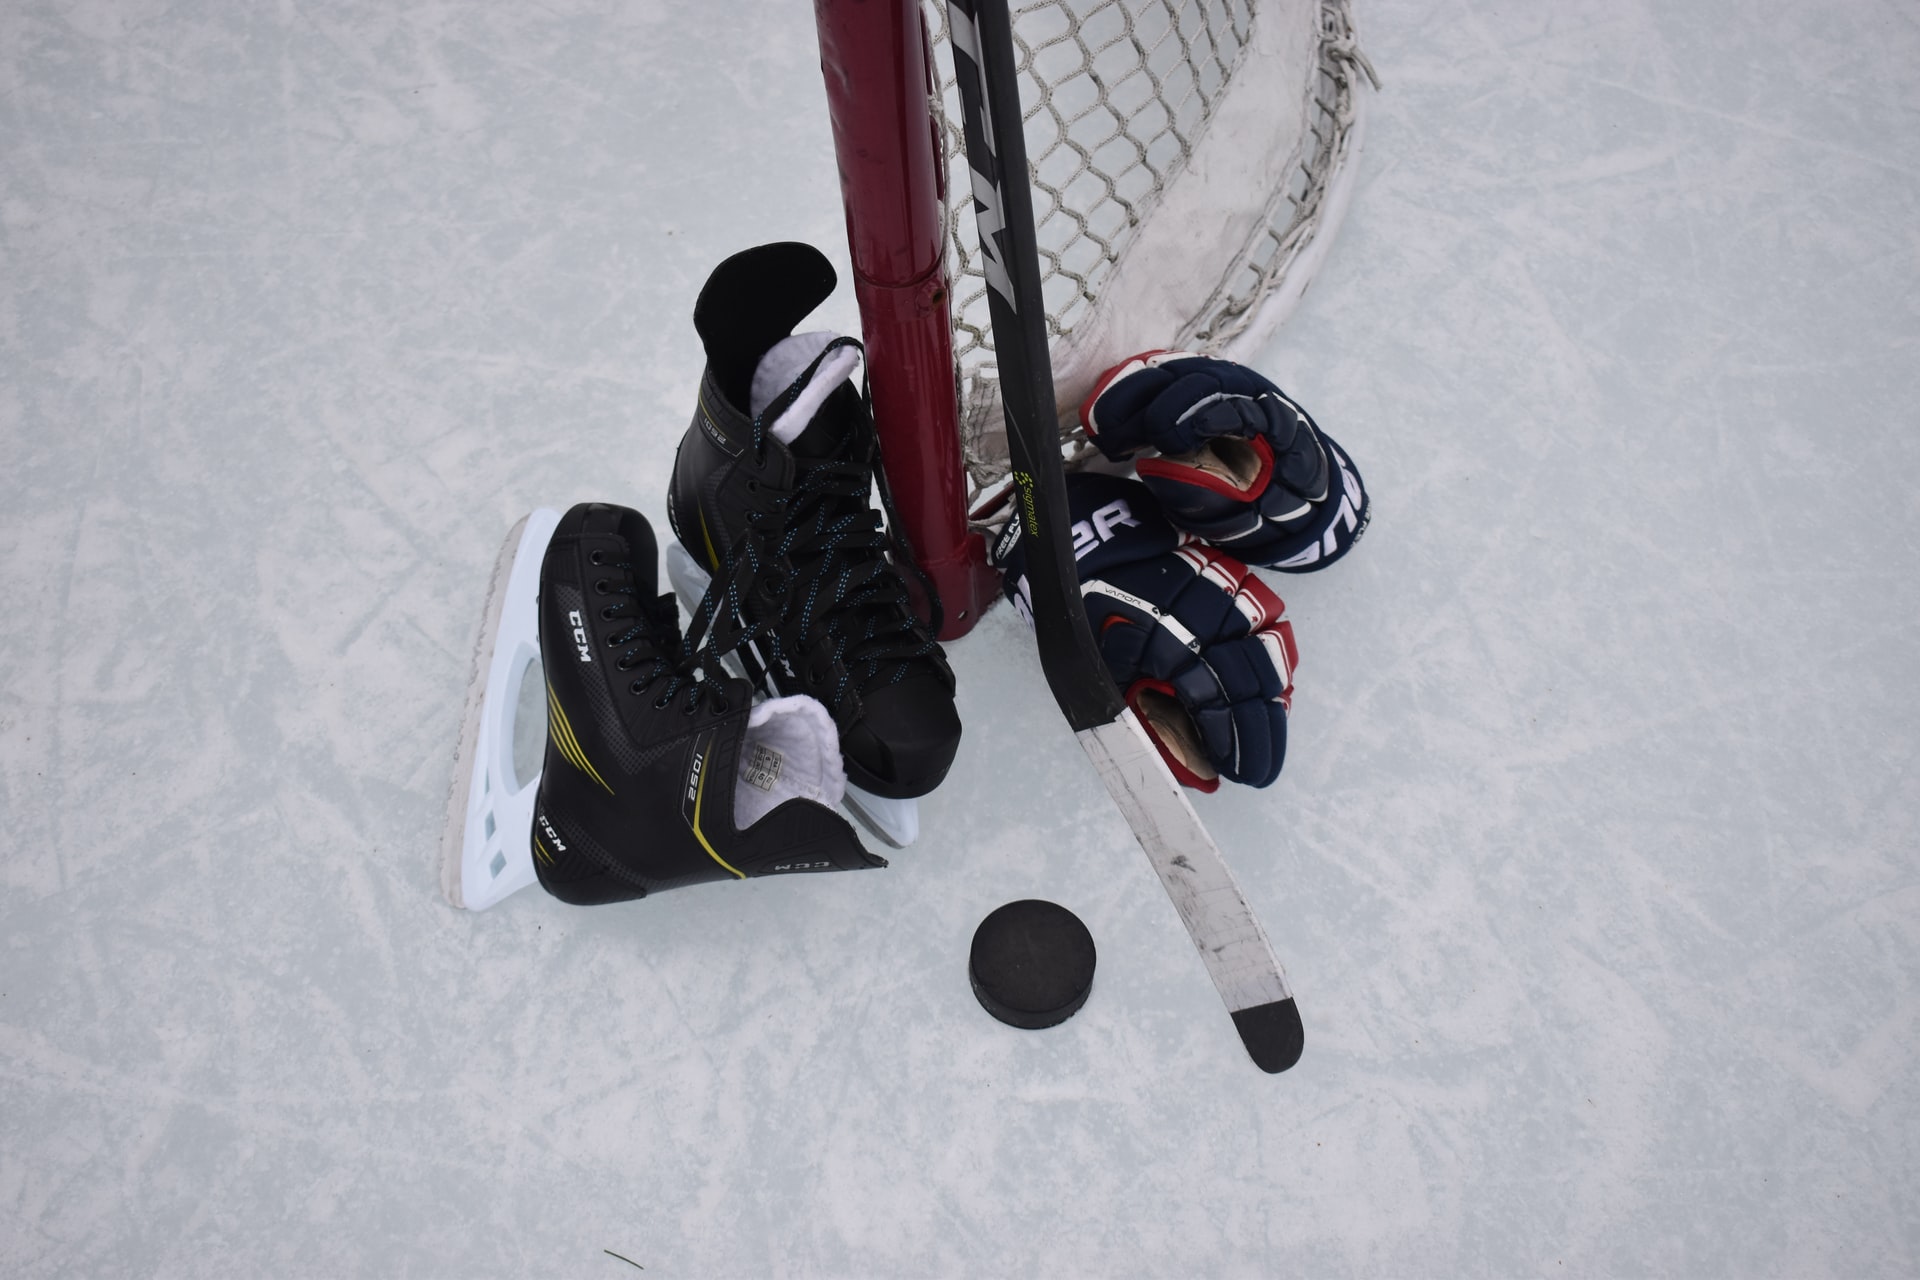 Hokej jest na szarym końcu sportów zimowych. Dlaczego tak się dzieje?